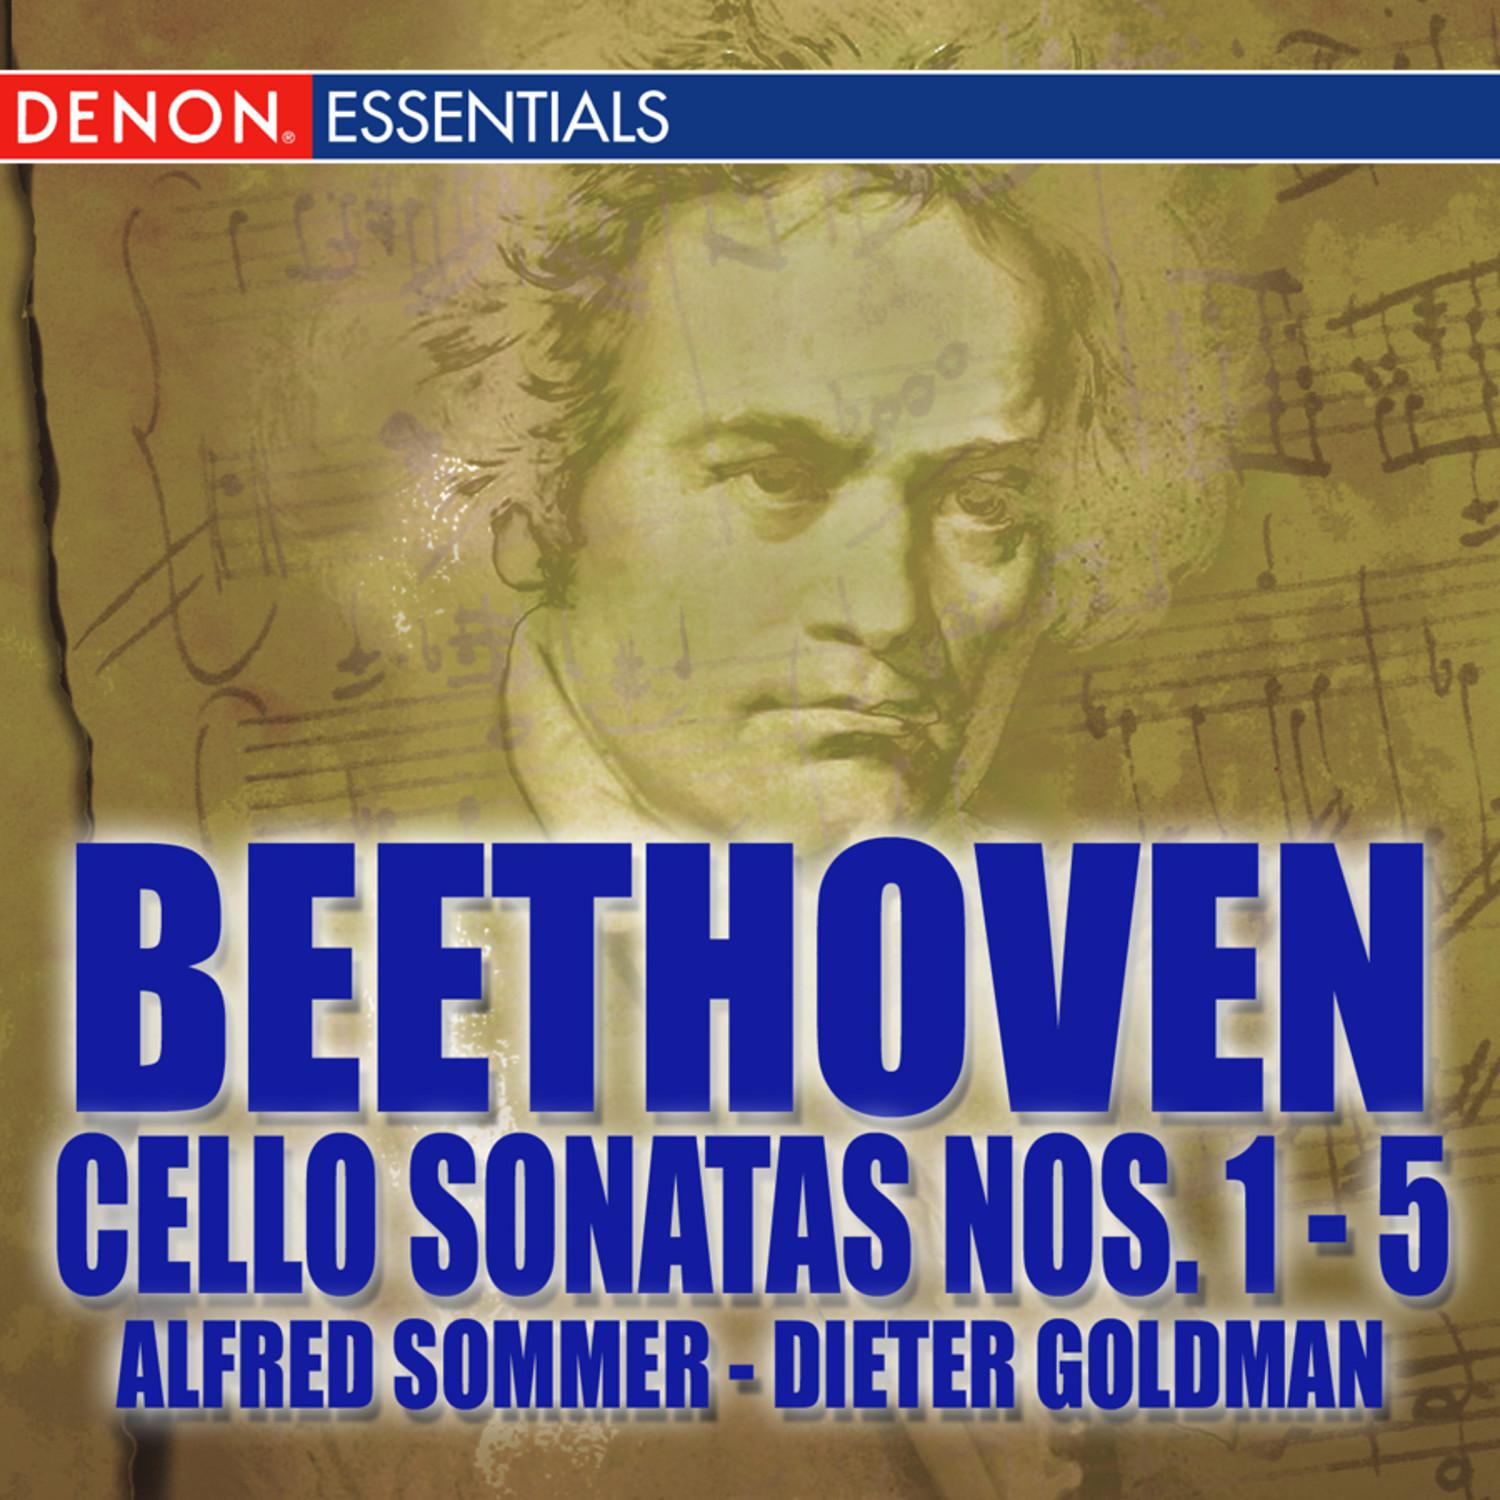 Cello Sonata No. 2 in G Minor, Op. 5: Adagio sostenuto e espressivo  Allegro molto piu tosto presto  Rondo  Allegro